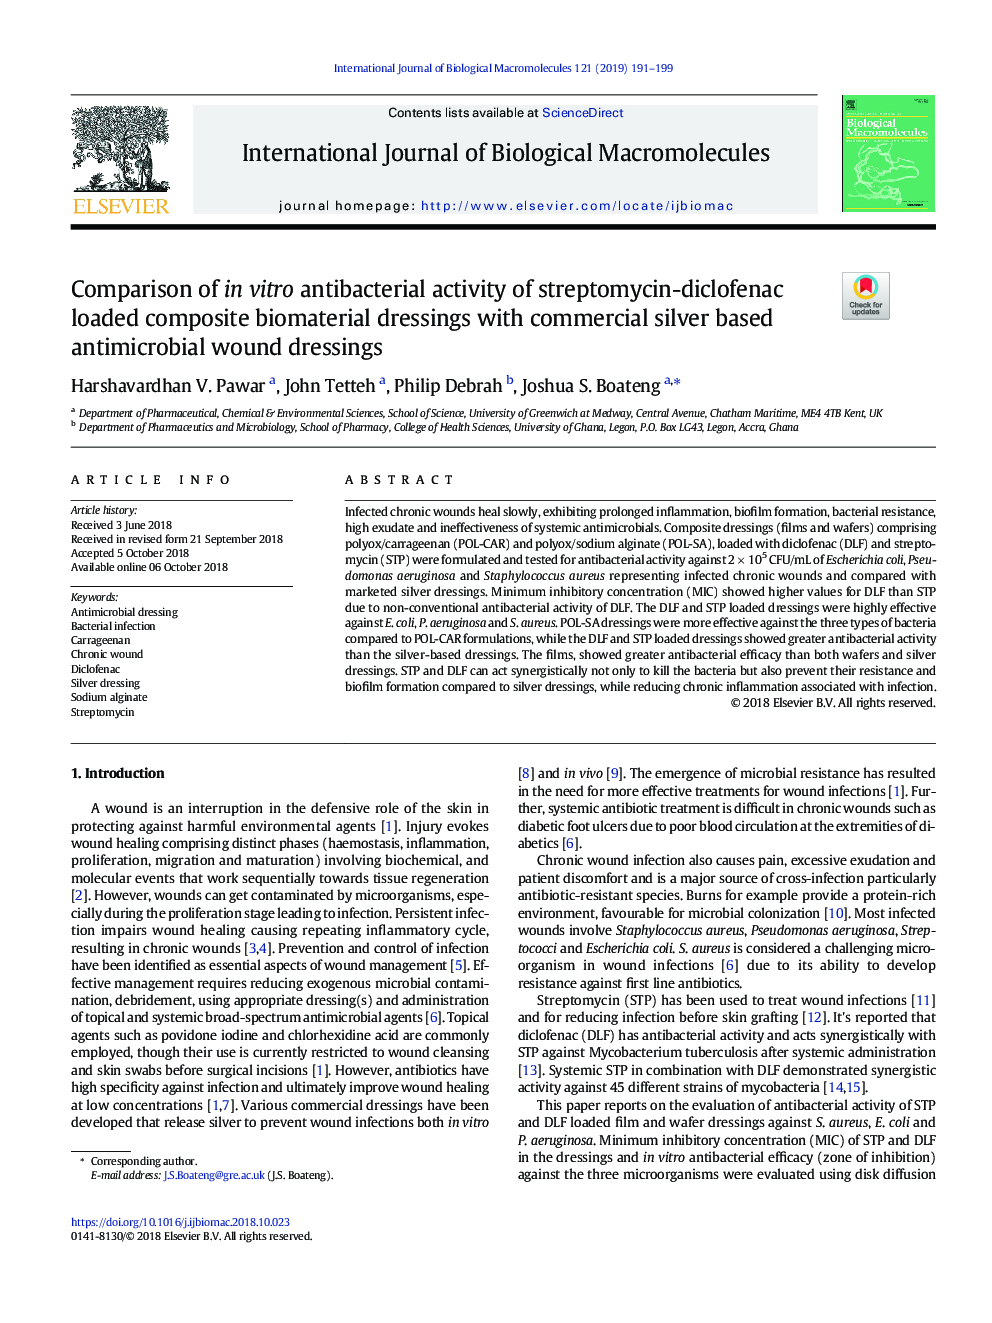 مقایسه فعالیت ضد باکتری در آزمایشات ضد باکتری استرپتومایسین-دیکلوفناک با افزودنی های زیستی مواد کامپوزیتی